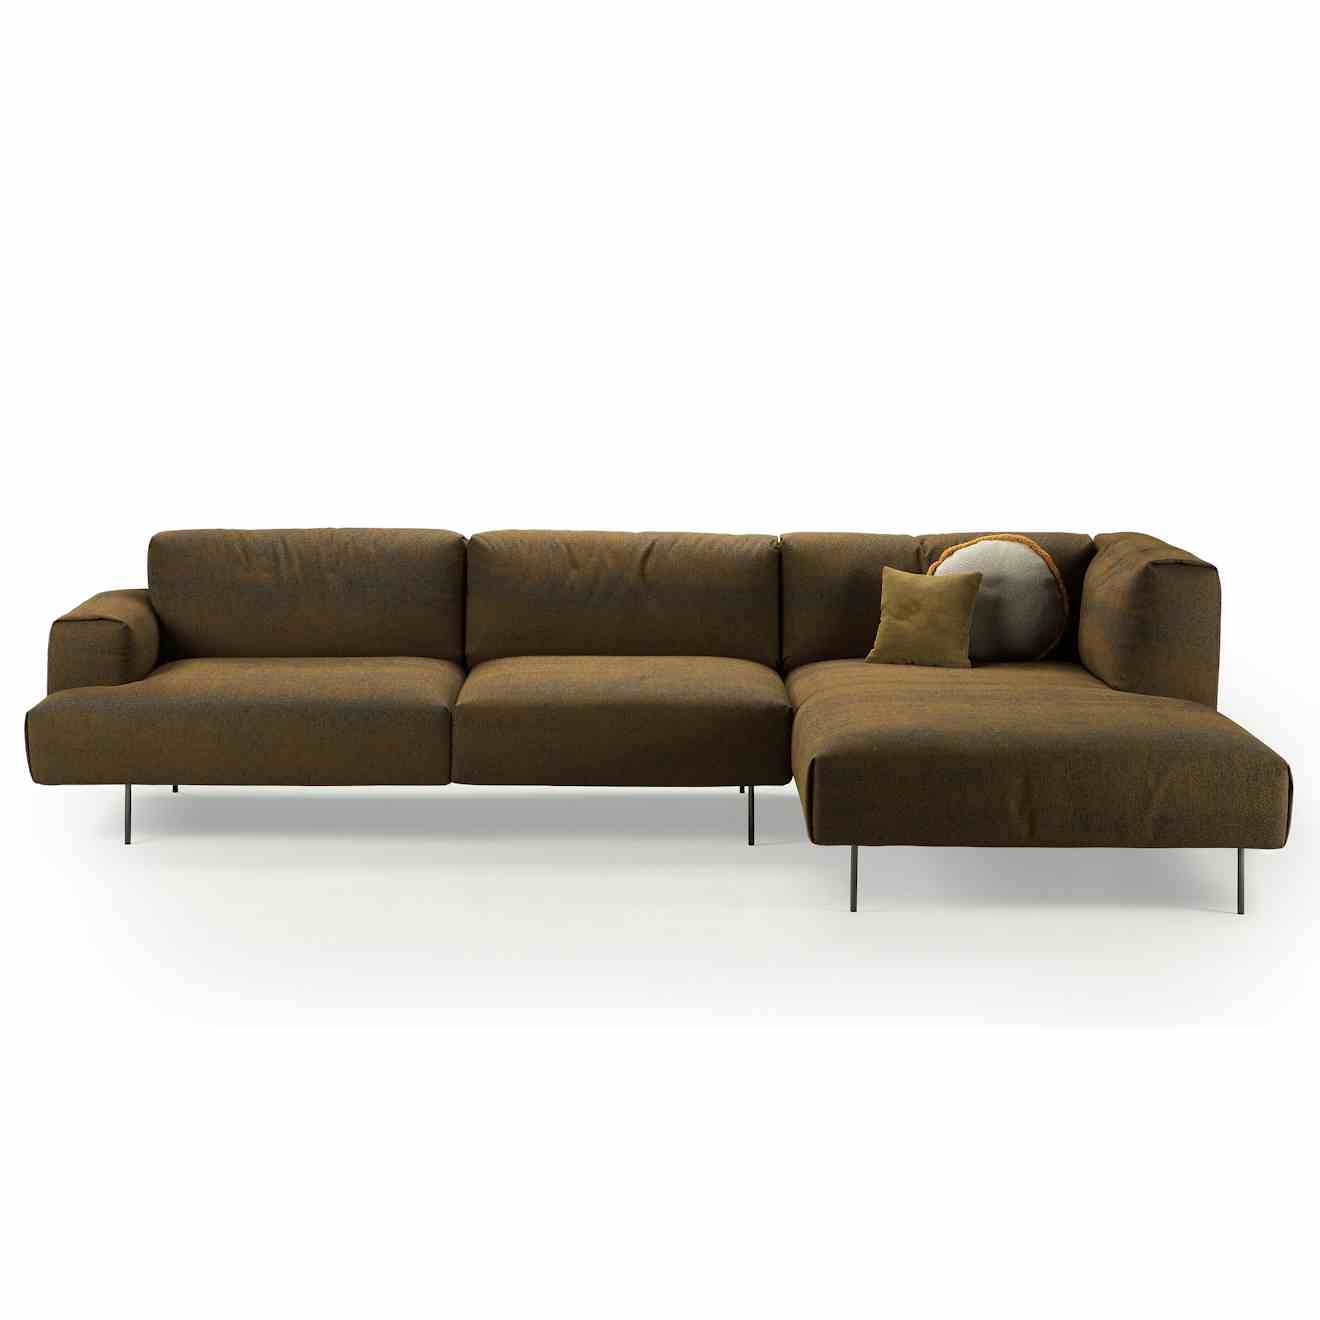 Sancal furniture tiptoe sofa brown thumbnail haute living